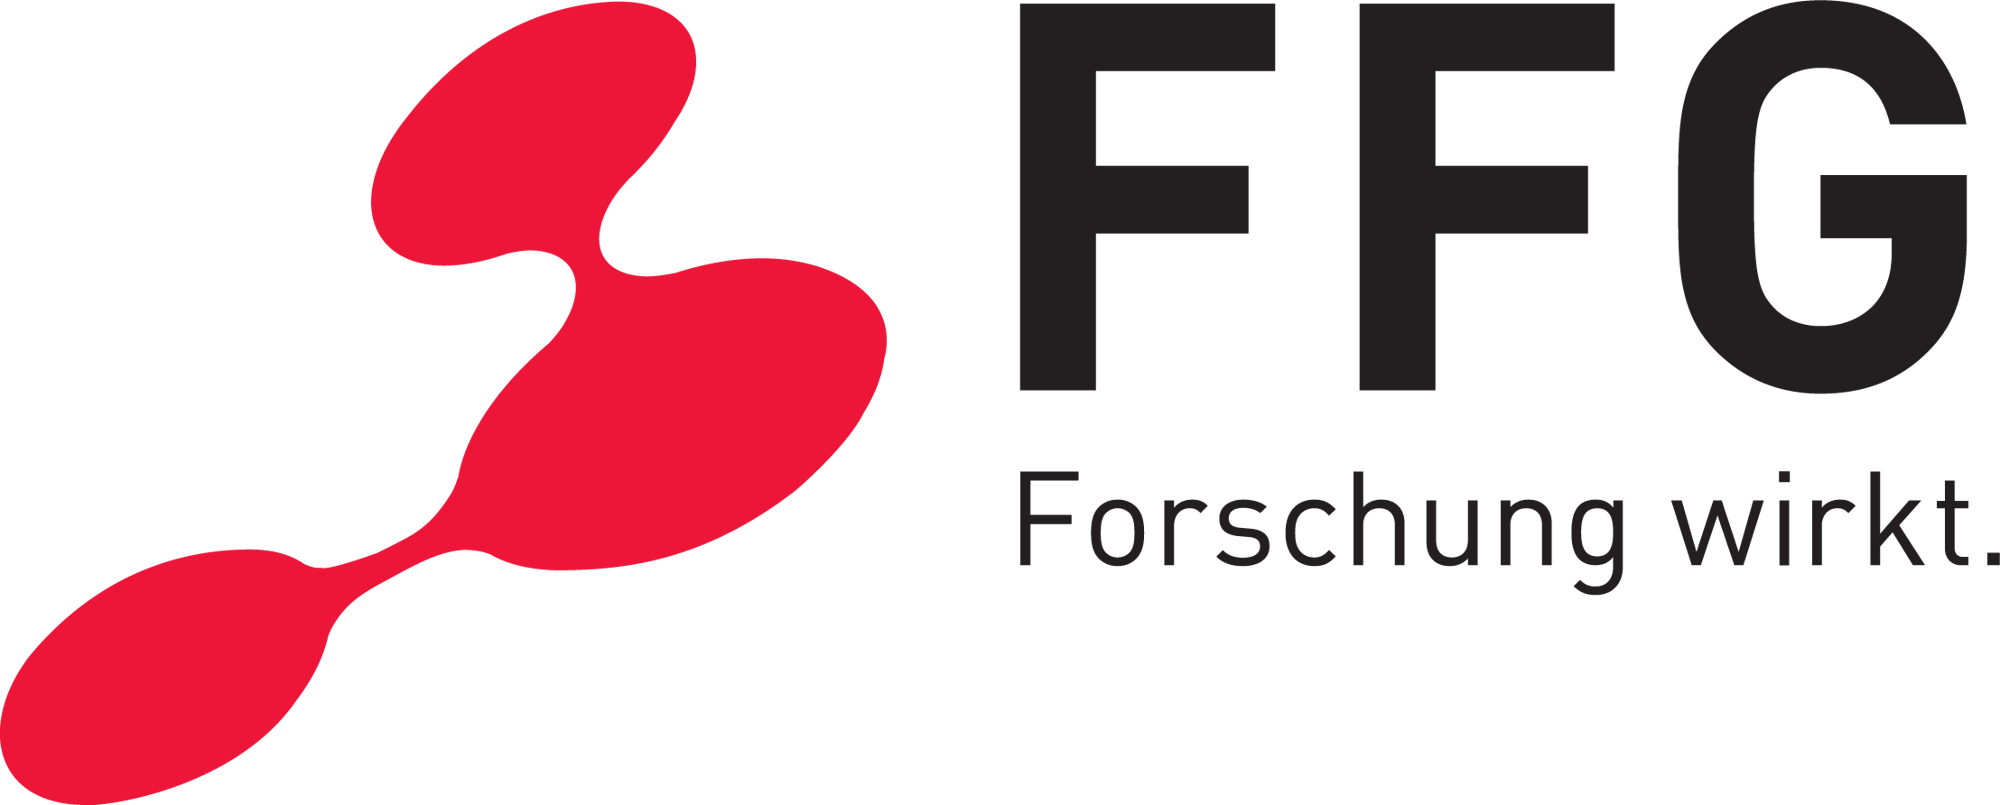 ffg_logo_de-png